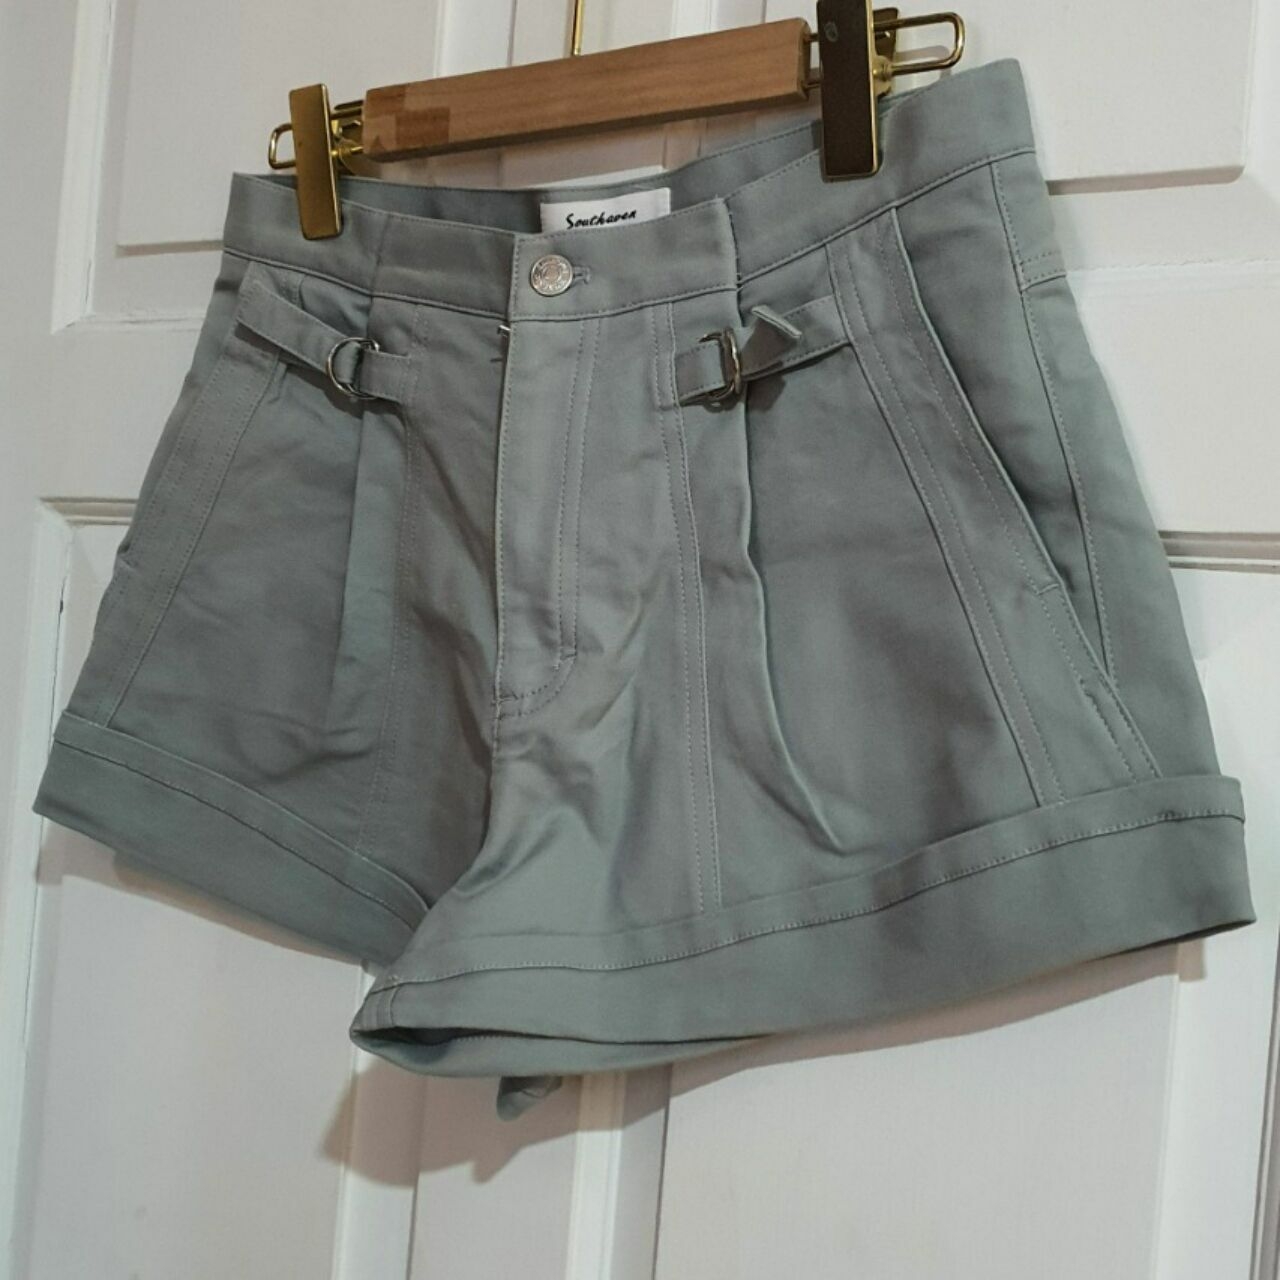 Southaven Green Short Pants